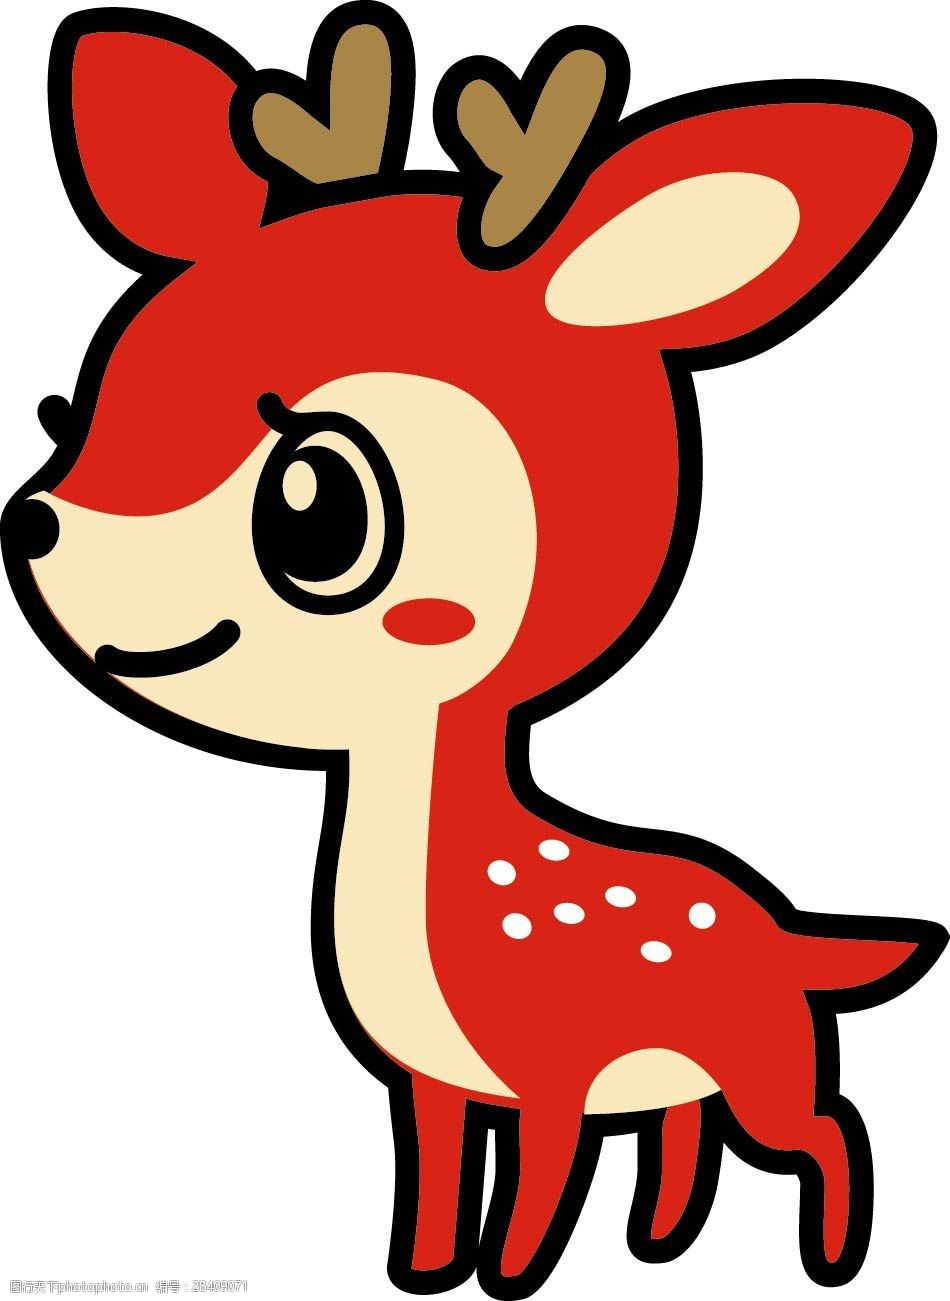 关键词:小鹿插画设计 卡通小鹿 动漫玩偶 卡通动物 可爱小鹿 插画